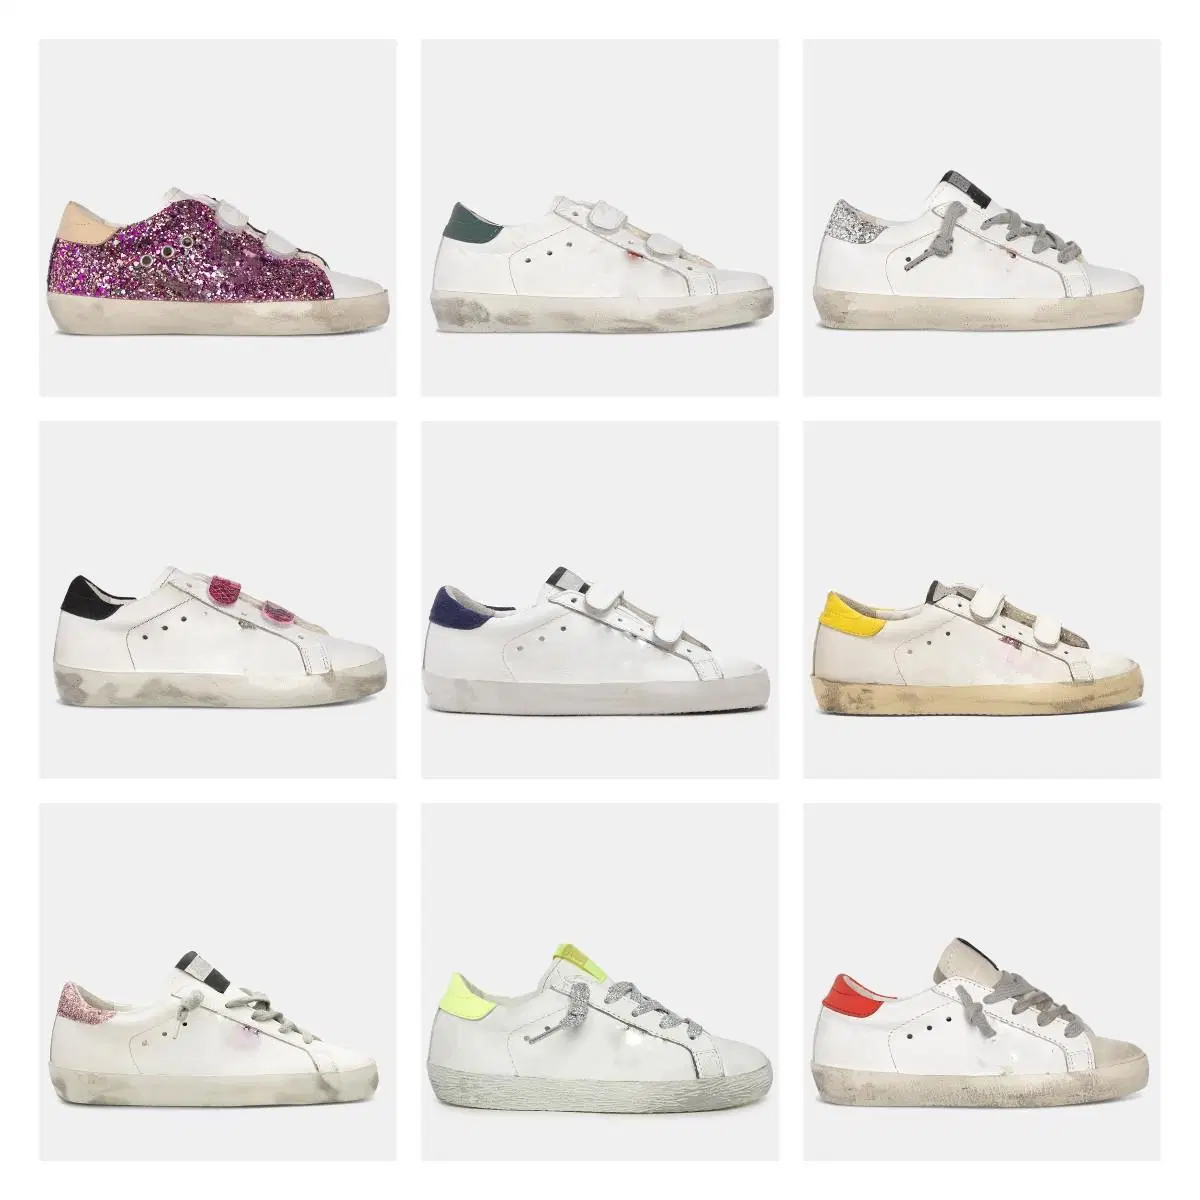 Кроссовки Deluxe Brand Shoes Children Golden Star Sneakers Casual Classic блестящие Дизайнерские детские девочки (8–15) Белые девочки (8–15) Старая грязная кожа (0–3 Обувь